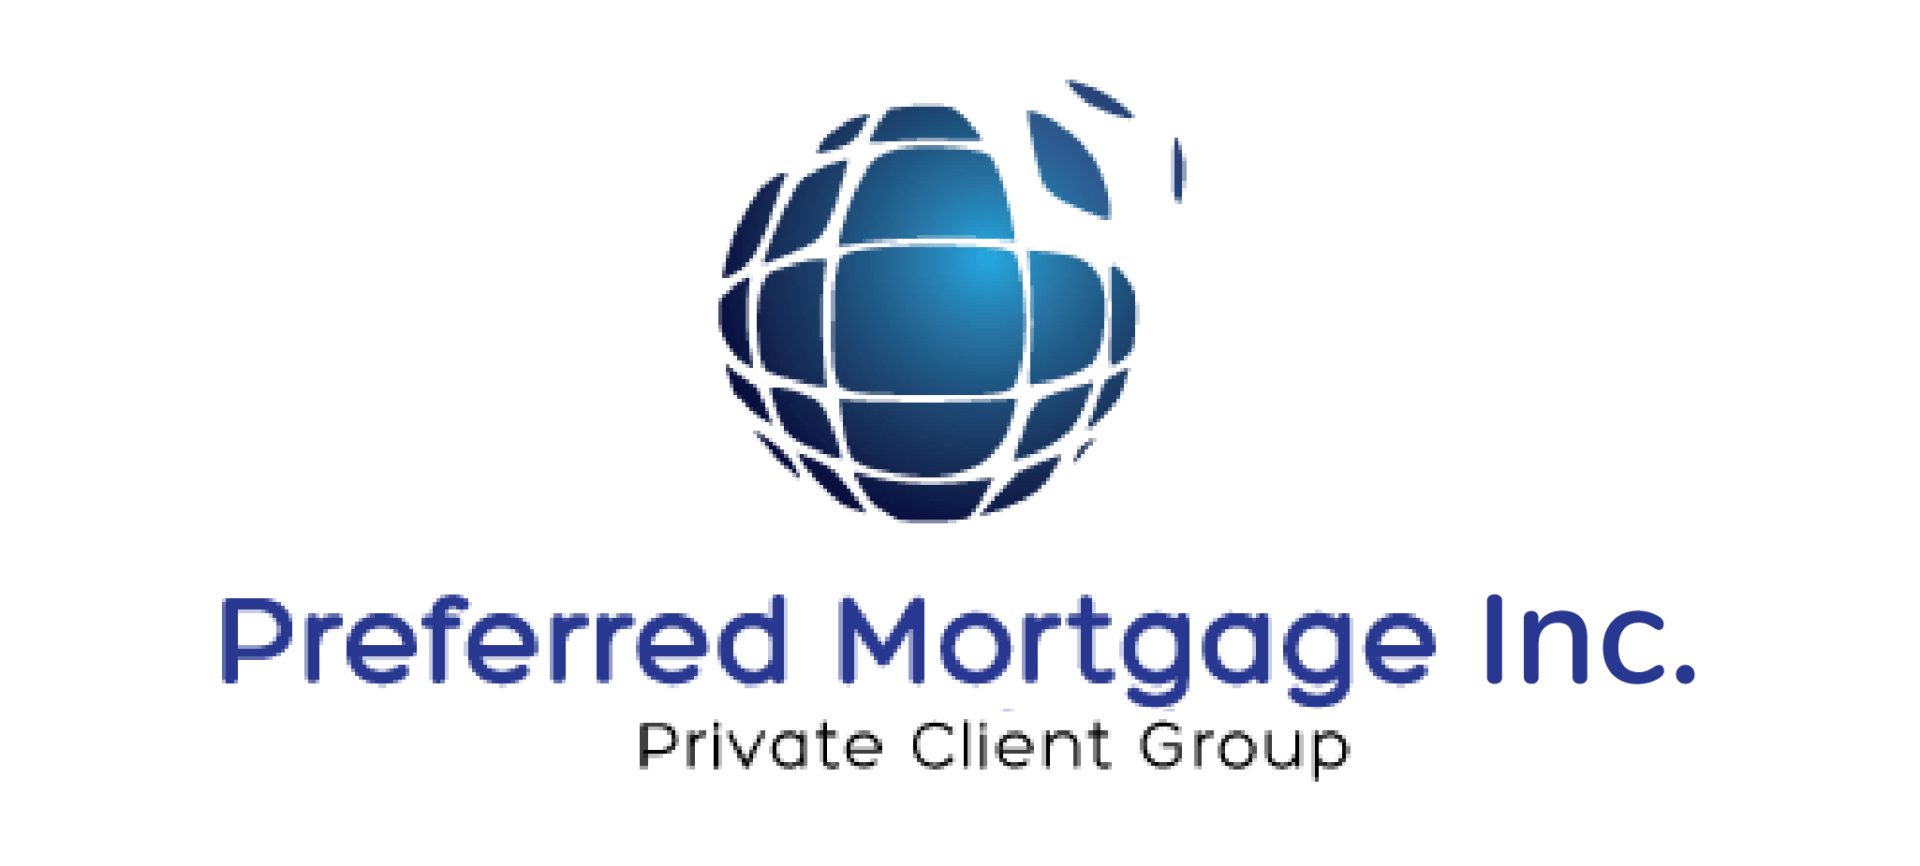 preferred mortgage lending logo